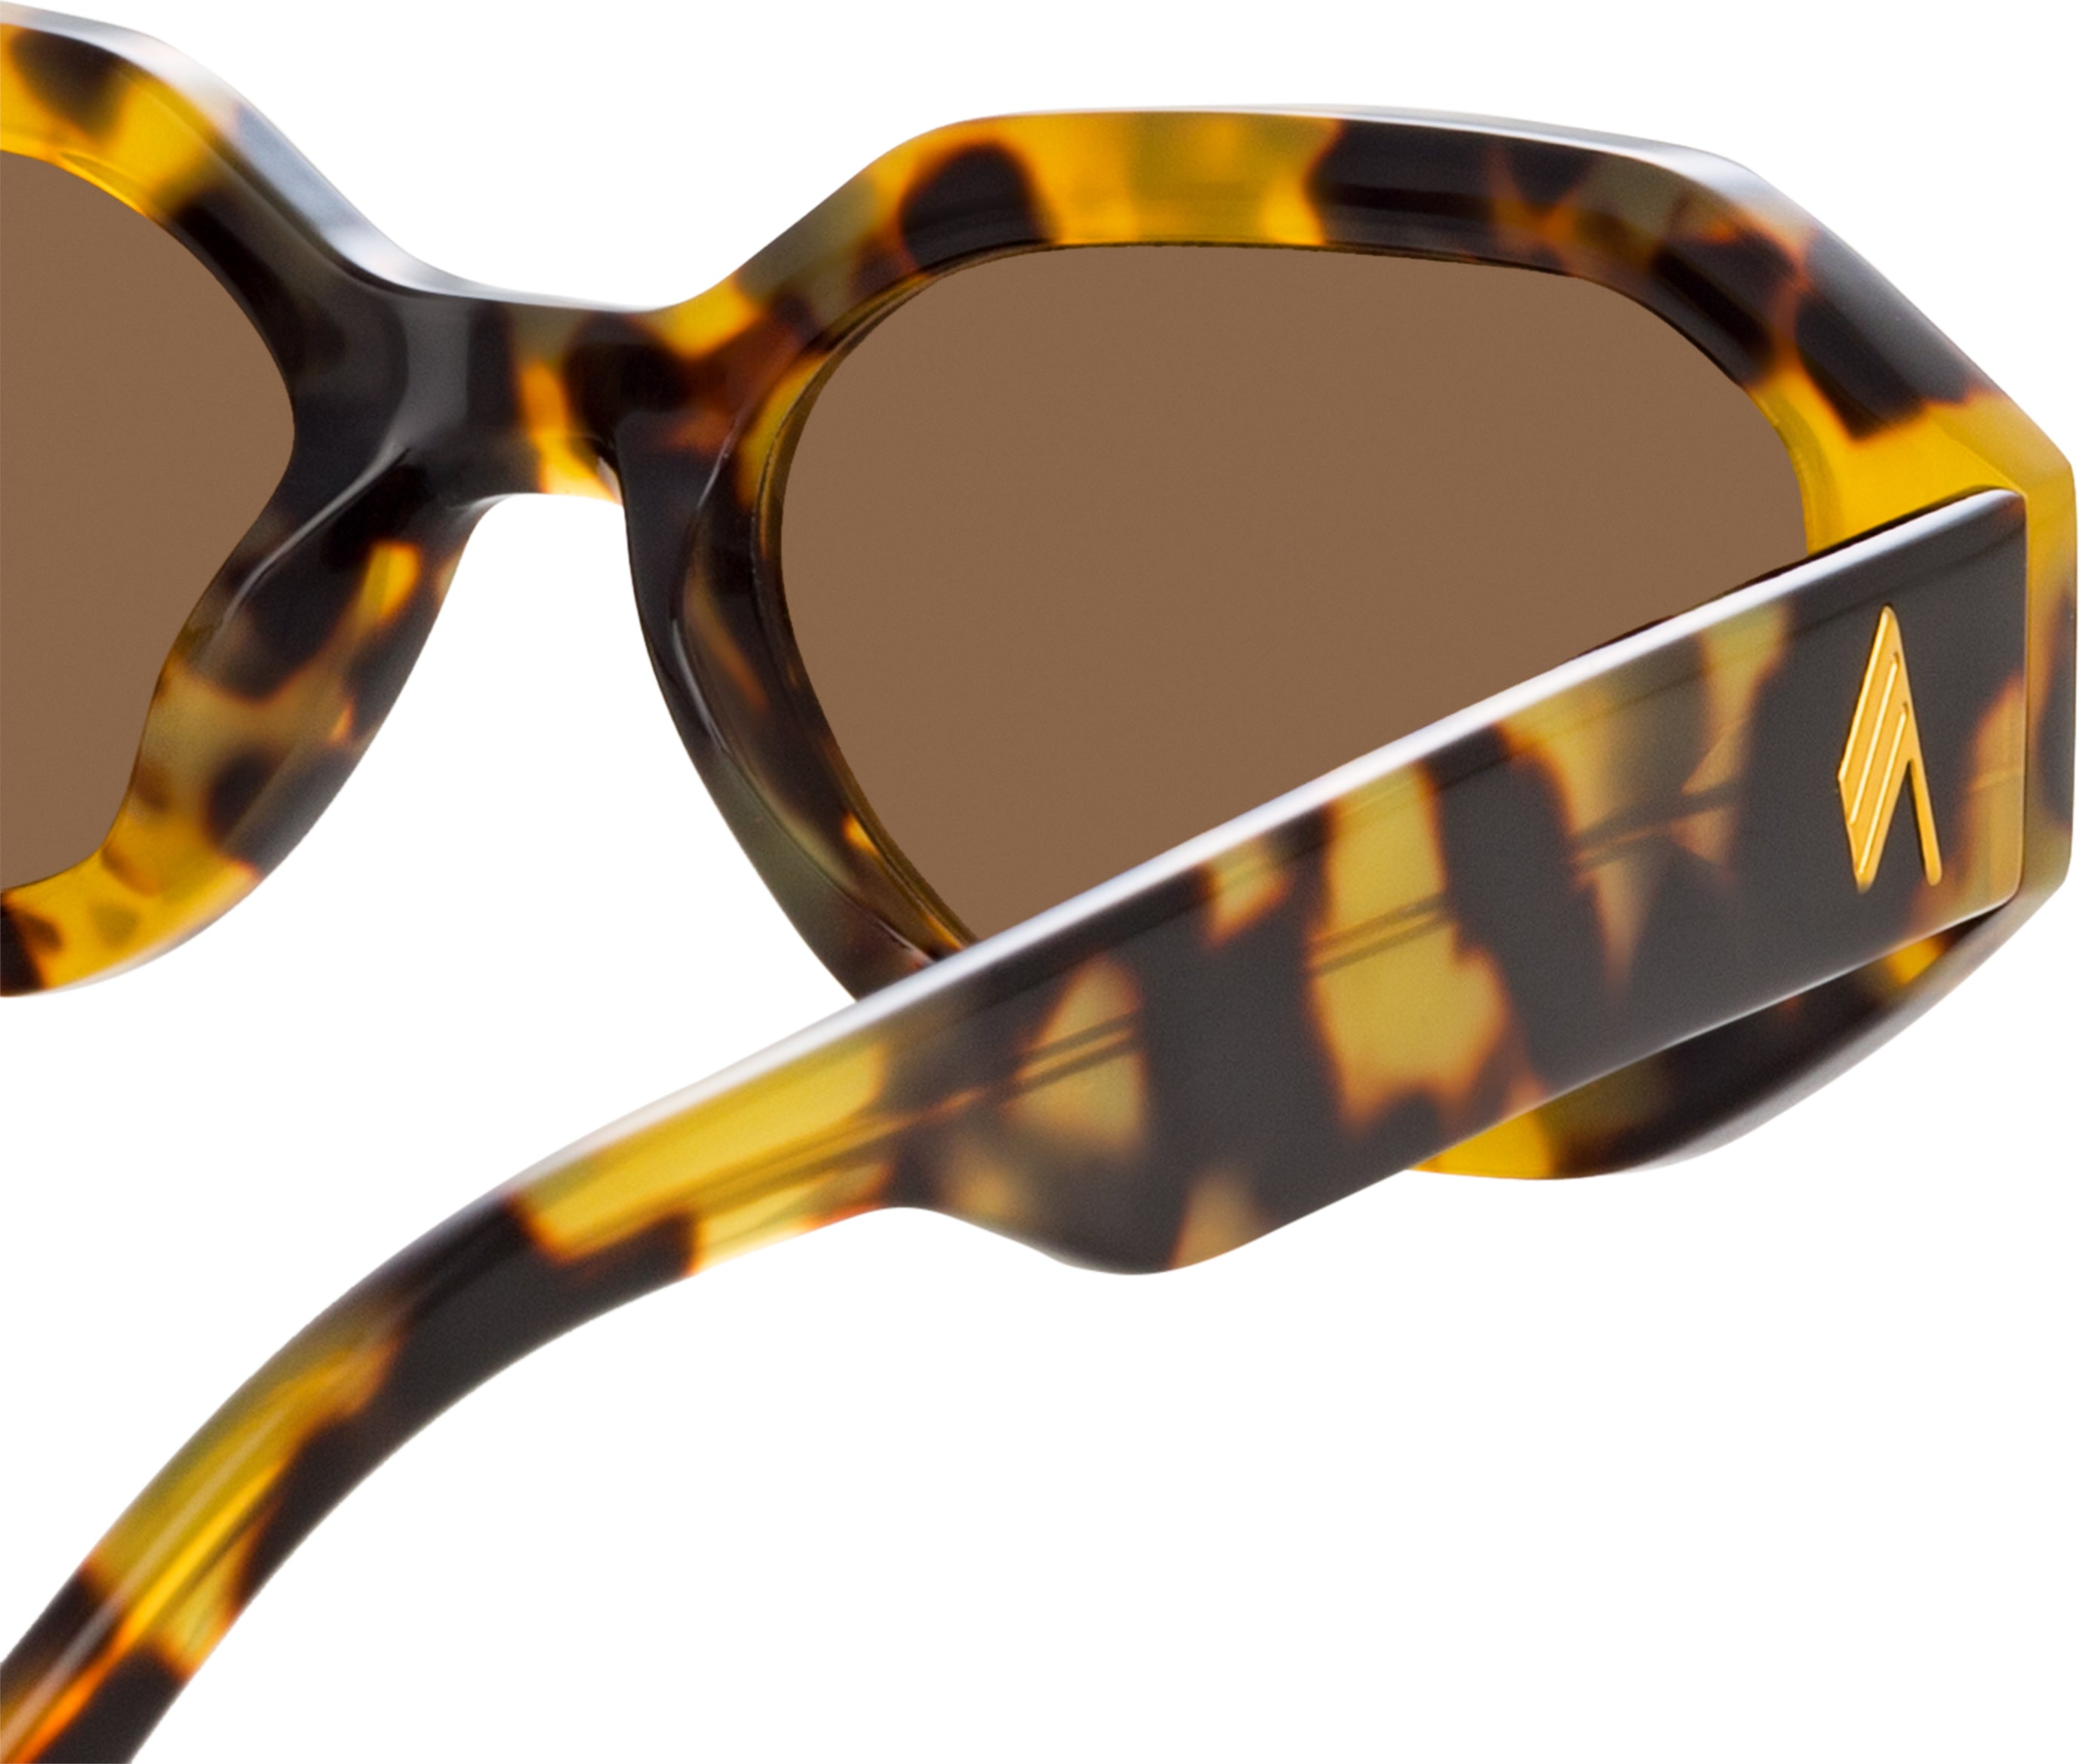 Color_ATTICO14C8SUN - The Attico Irene Angular Sunglasses in Tortoiseshell and Brown